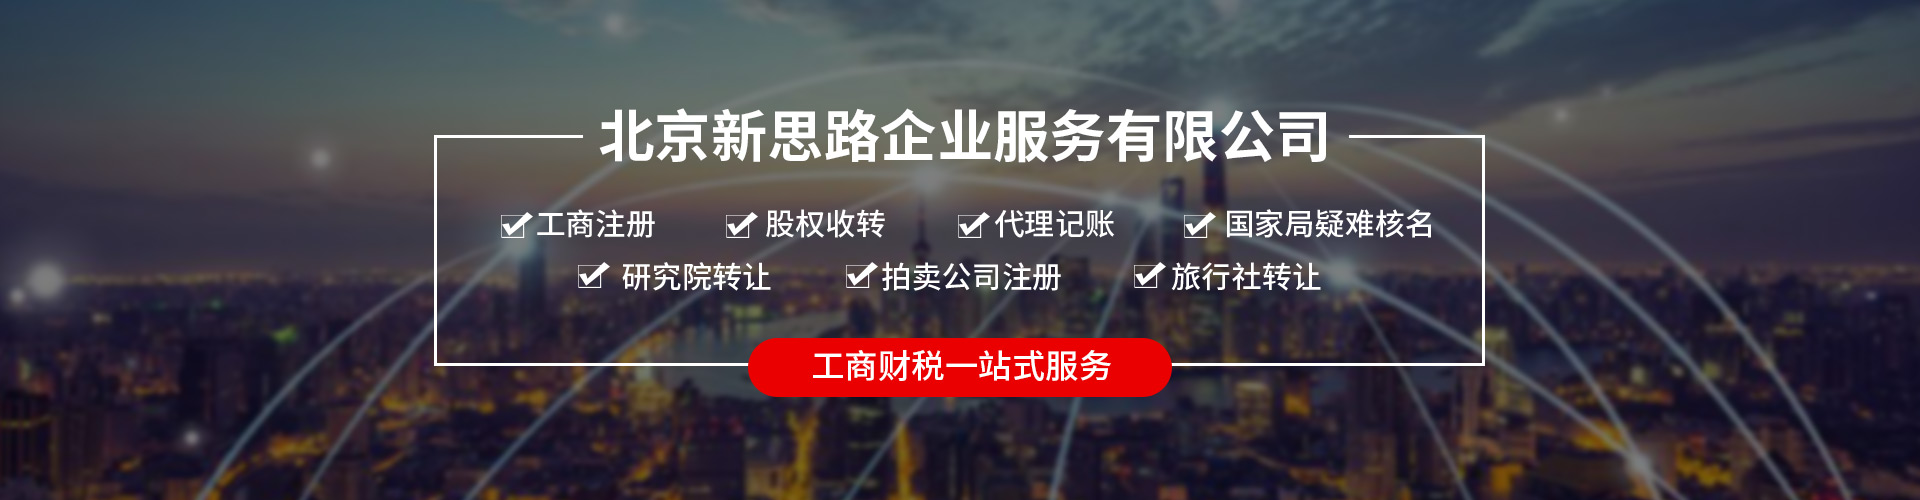 北京寄卖行公司注册流程